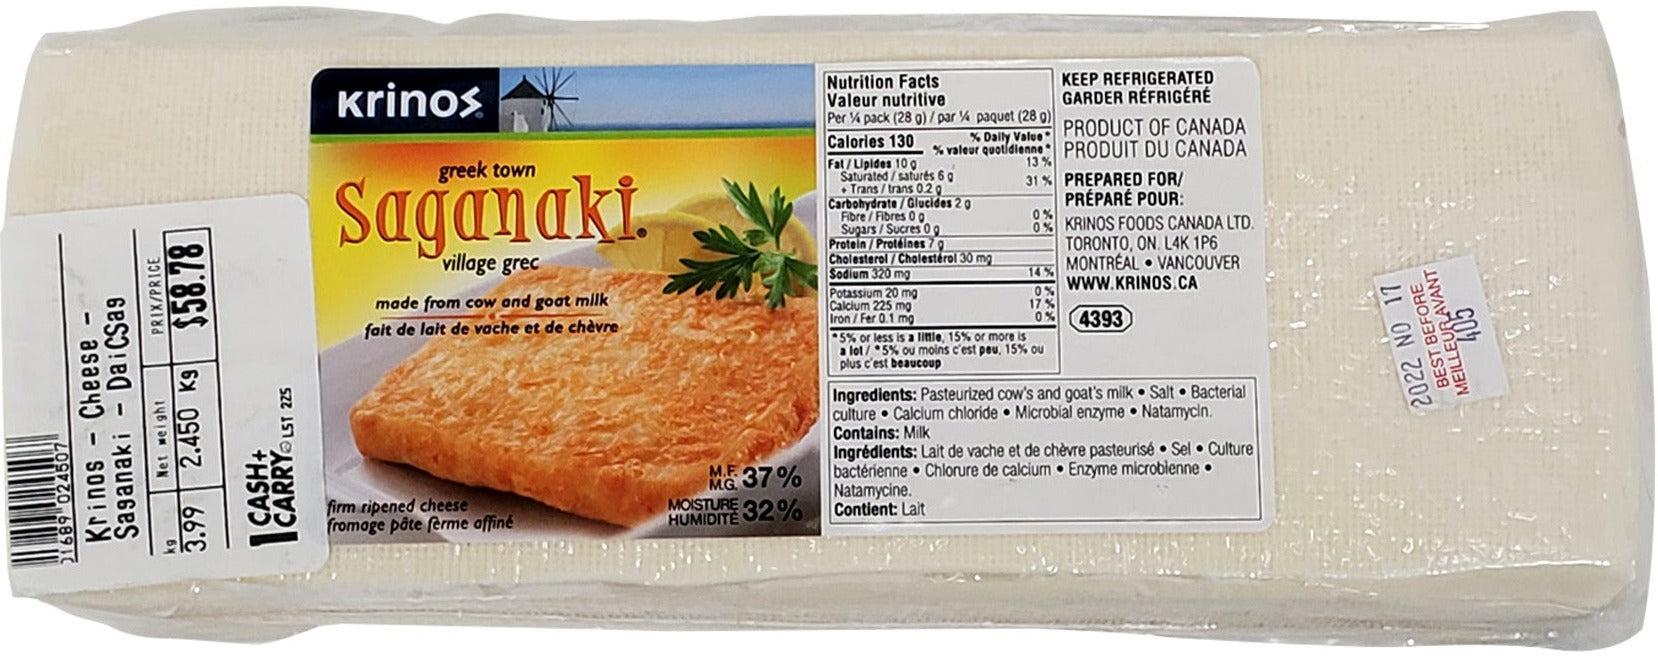 saganaki cheese 2.5 kg